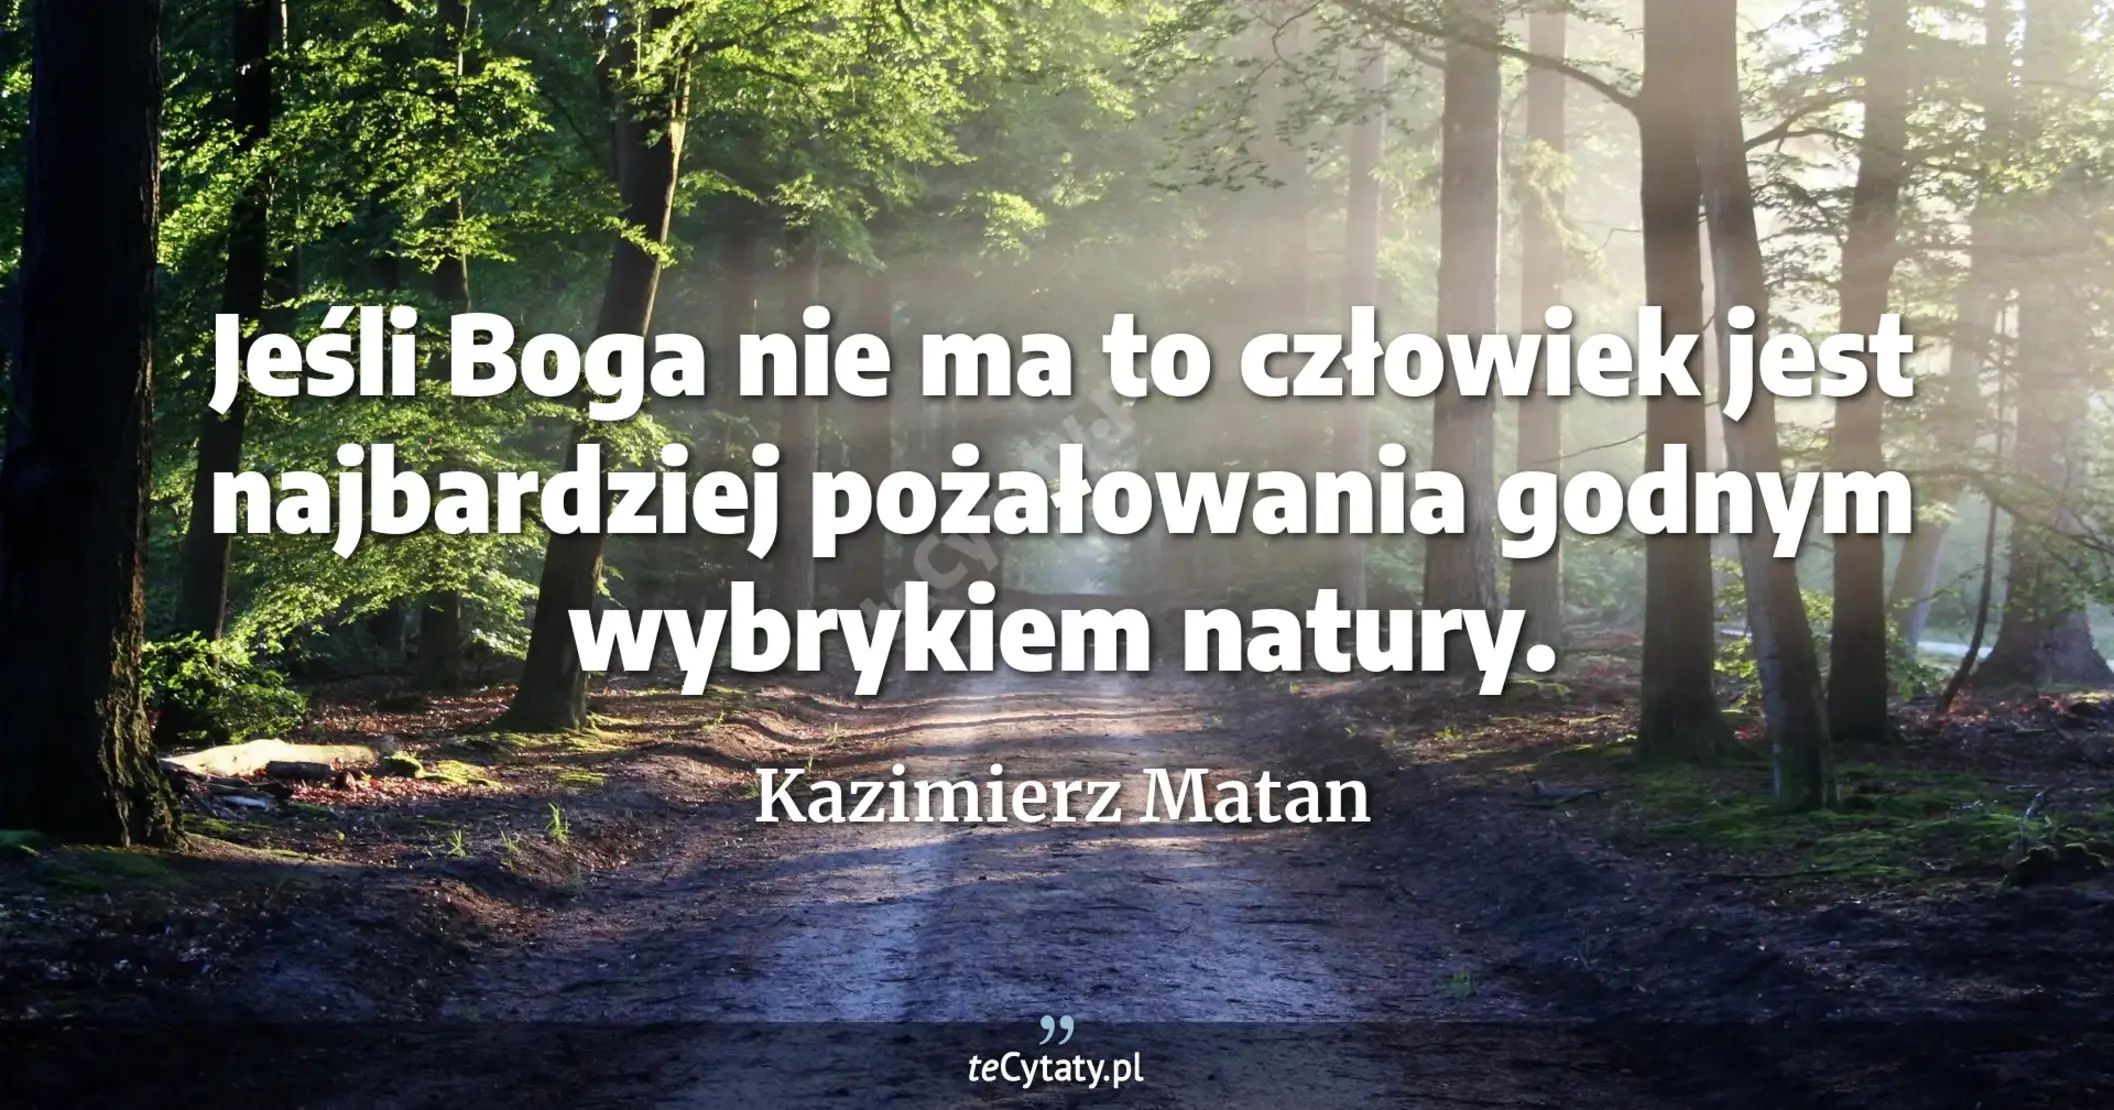 Jeśli Boga nie ma to człowiek jest najbardziej pożałowania godnym wybrykiem natury. - Kazimierz Matan